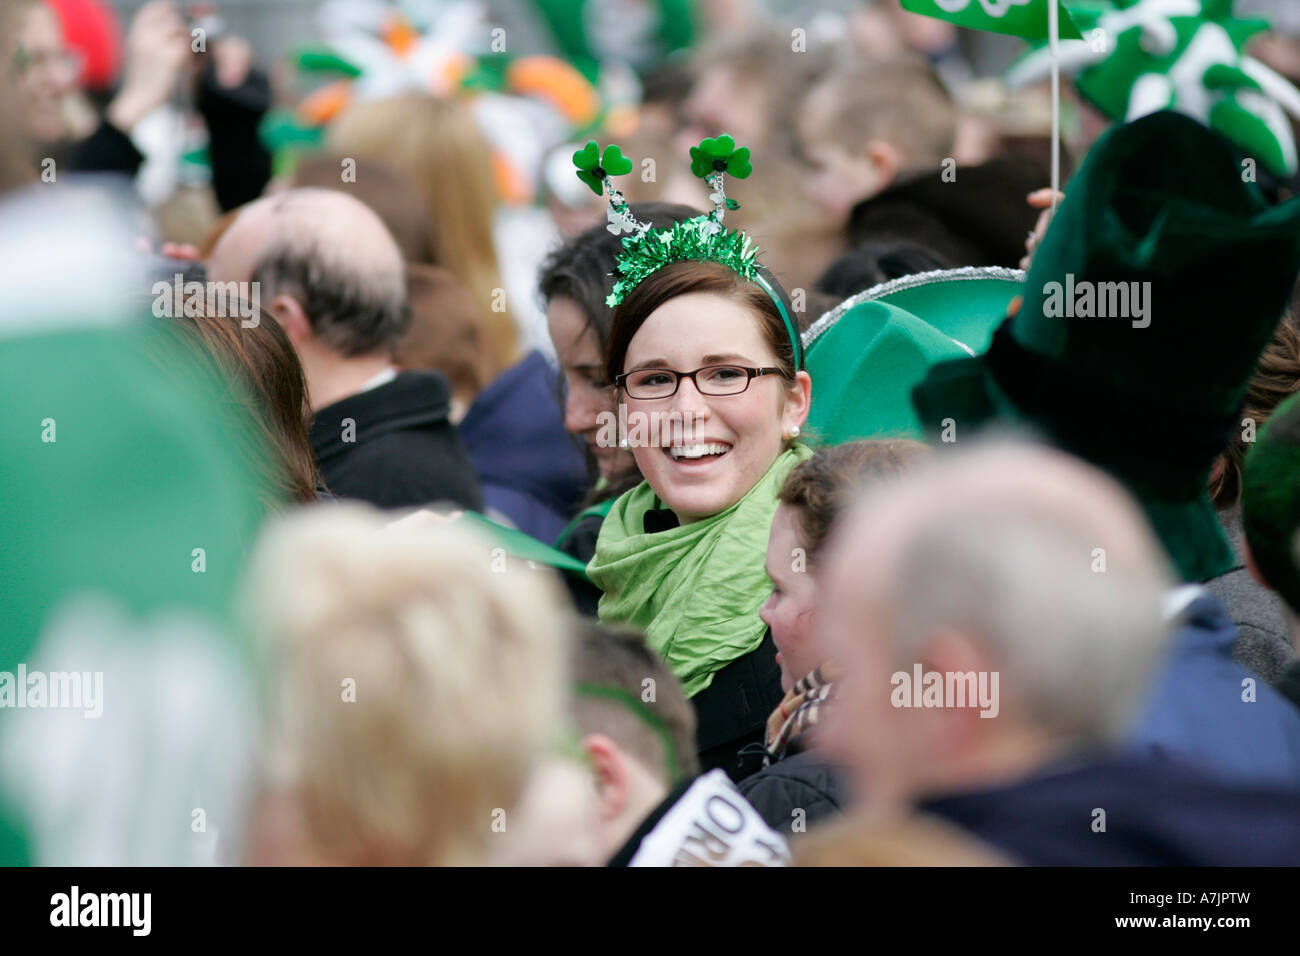 rot braun Mädchenakt Brillen-und grünen Schal lächelnd in die Menge am St. Patricks Day Konzert Belfast Stockfoto